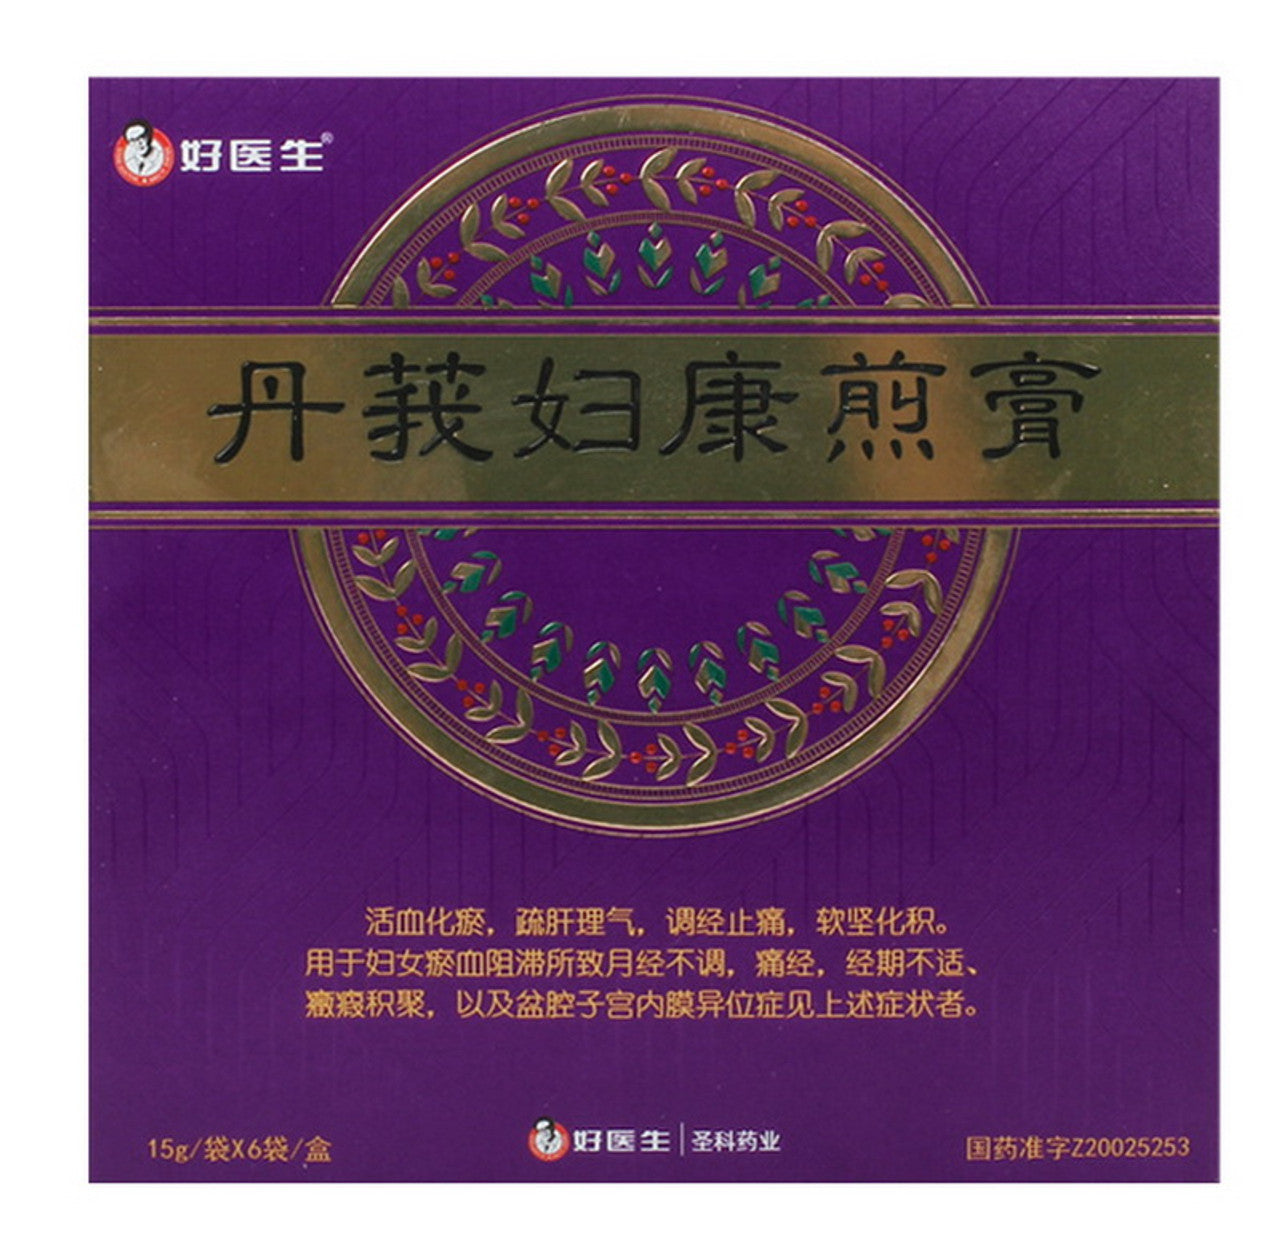 6 sachets*2 boxes/lot. Dan E Fu Kang Jian Gao For Dysmenorrhea